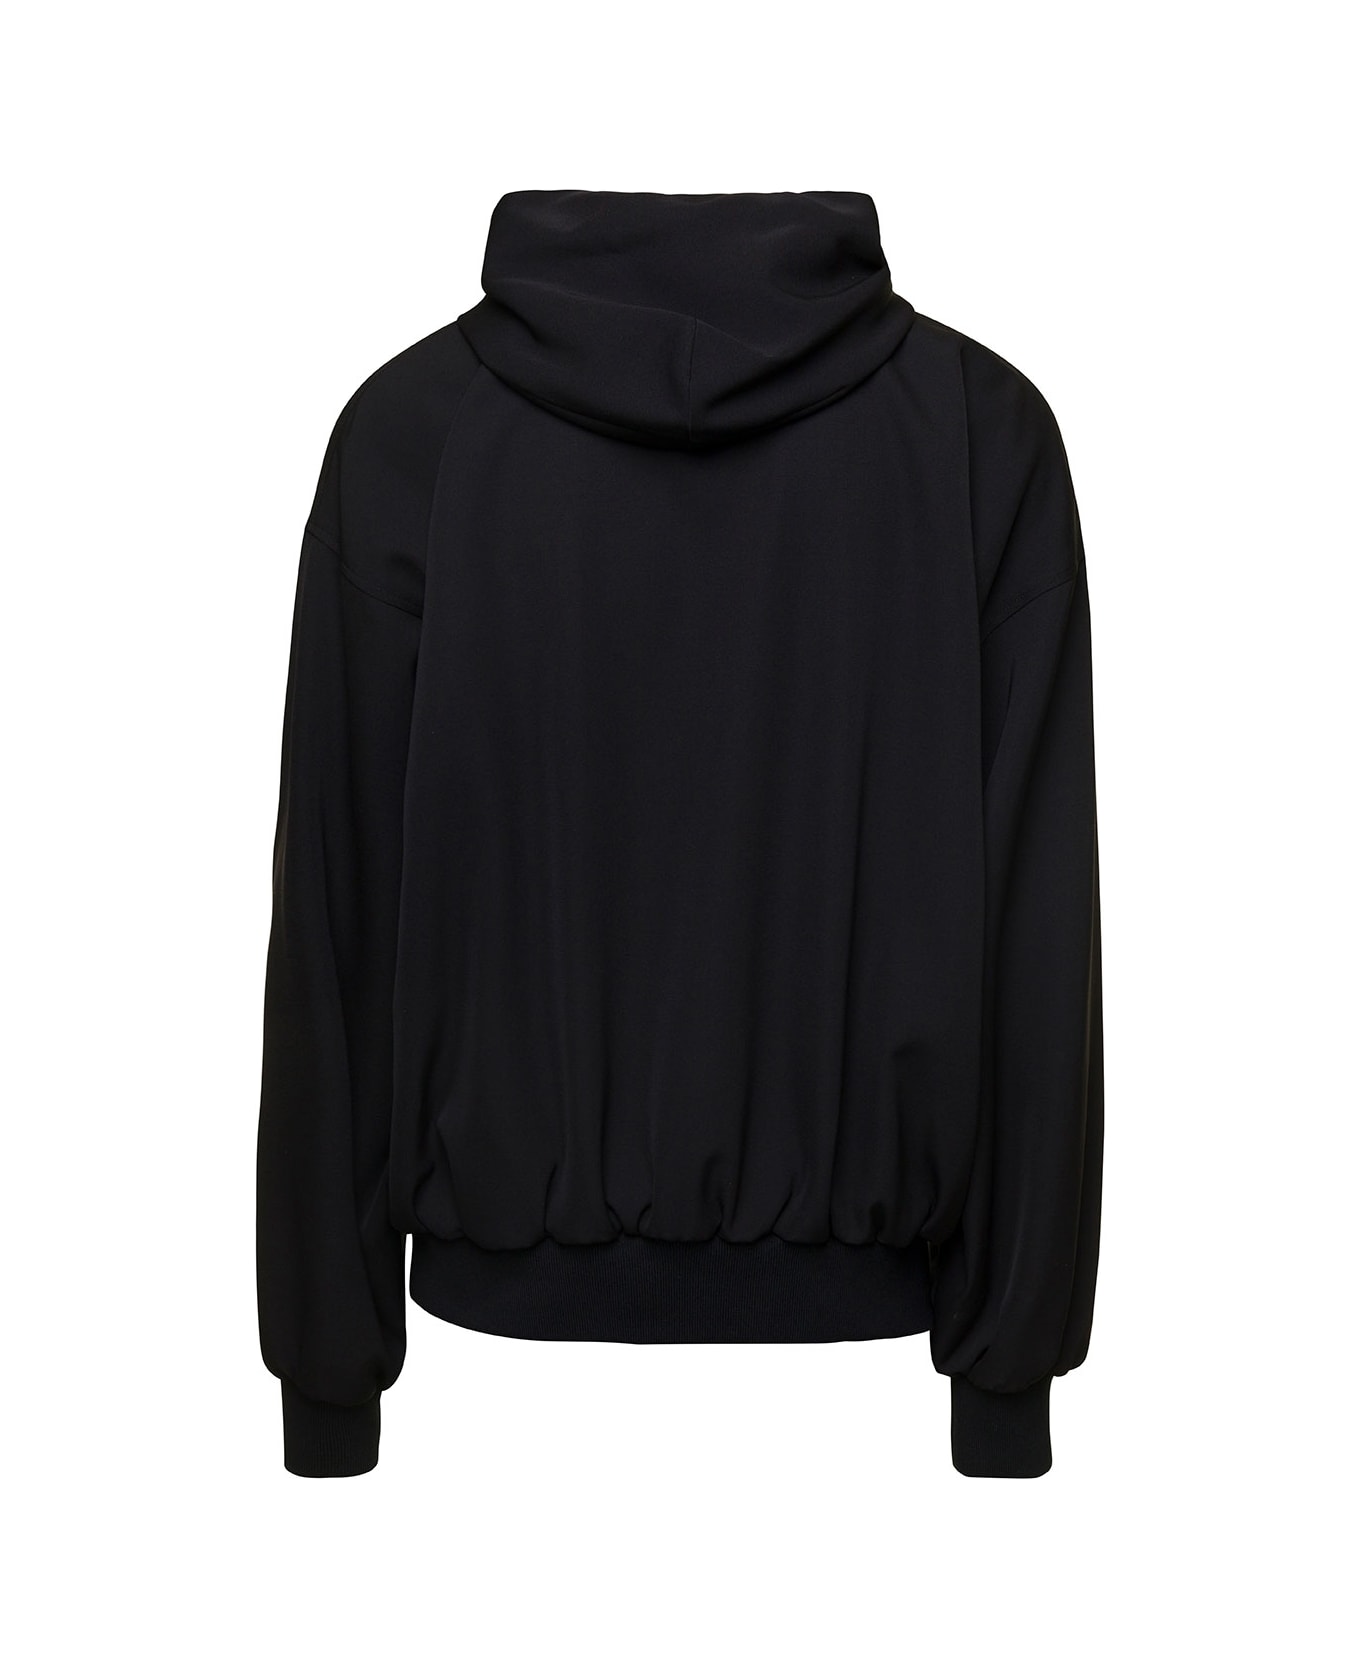 Balenciaga Black Zip-up Hoodie In Wool Man - Black